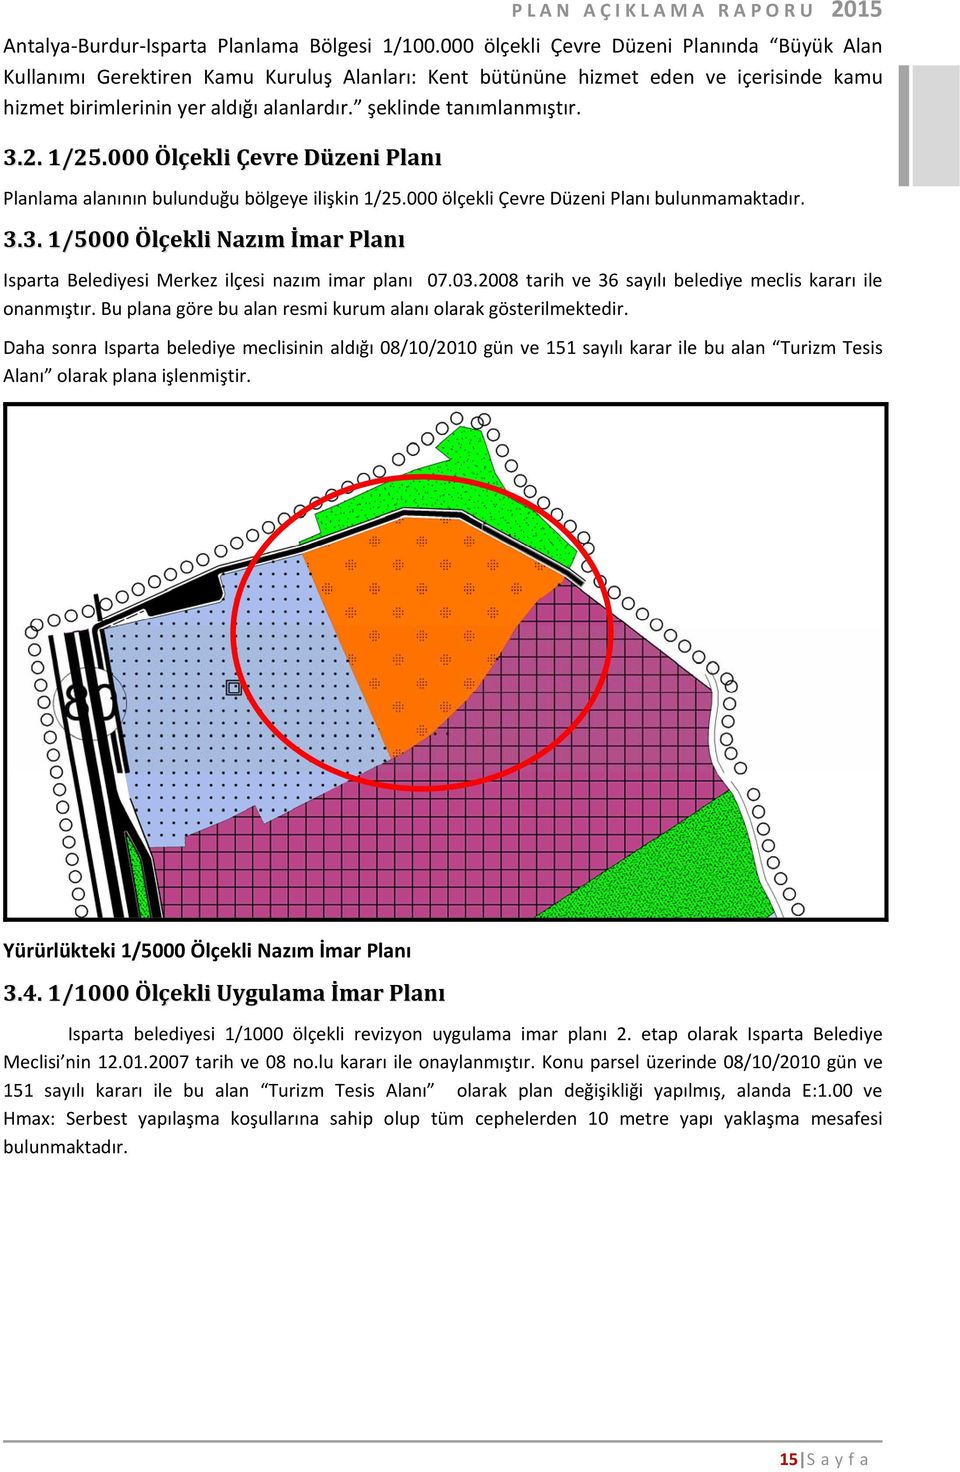 şeklinde tanımlanmıştır. 3.2. 1/25.000 Ölçekli Çevre Düzeni Planı Planlama alanının bulunduğu bölgeye ilişkin 1/25.000 ölçekli Çevre Düzeni Planı bulunmamaktadır. 3.3. 1/5000 Ölçekli Nazım İmar Planı Isparta Belediyesi Merkez ilçesi nazım imar planı 07.